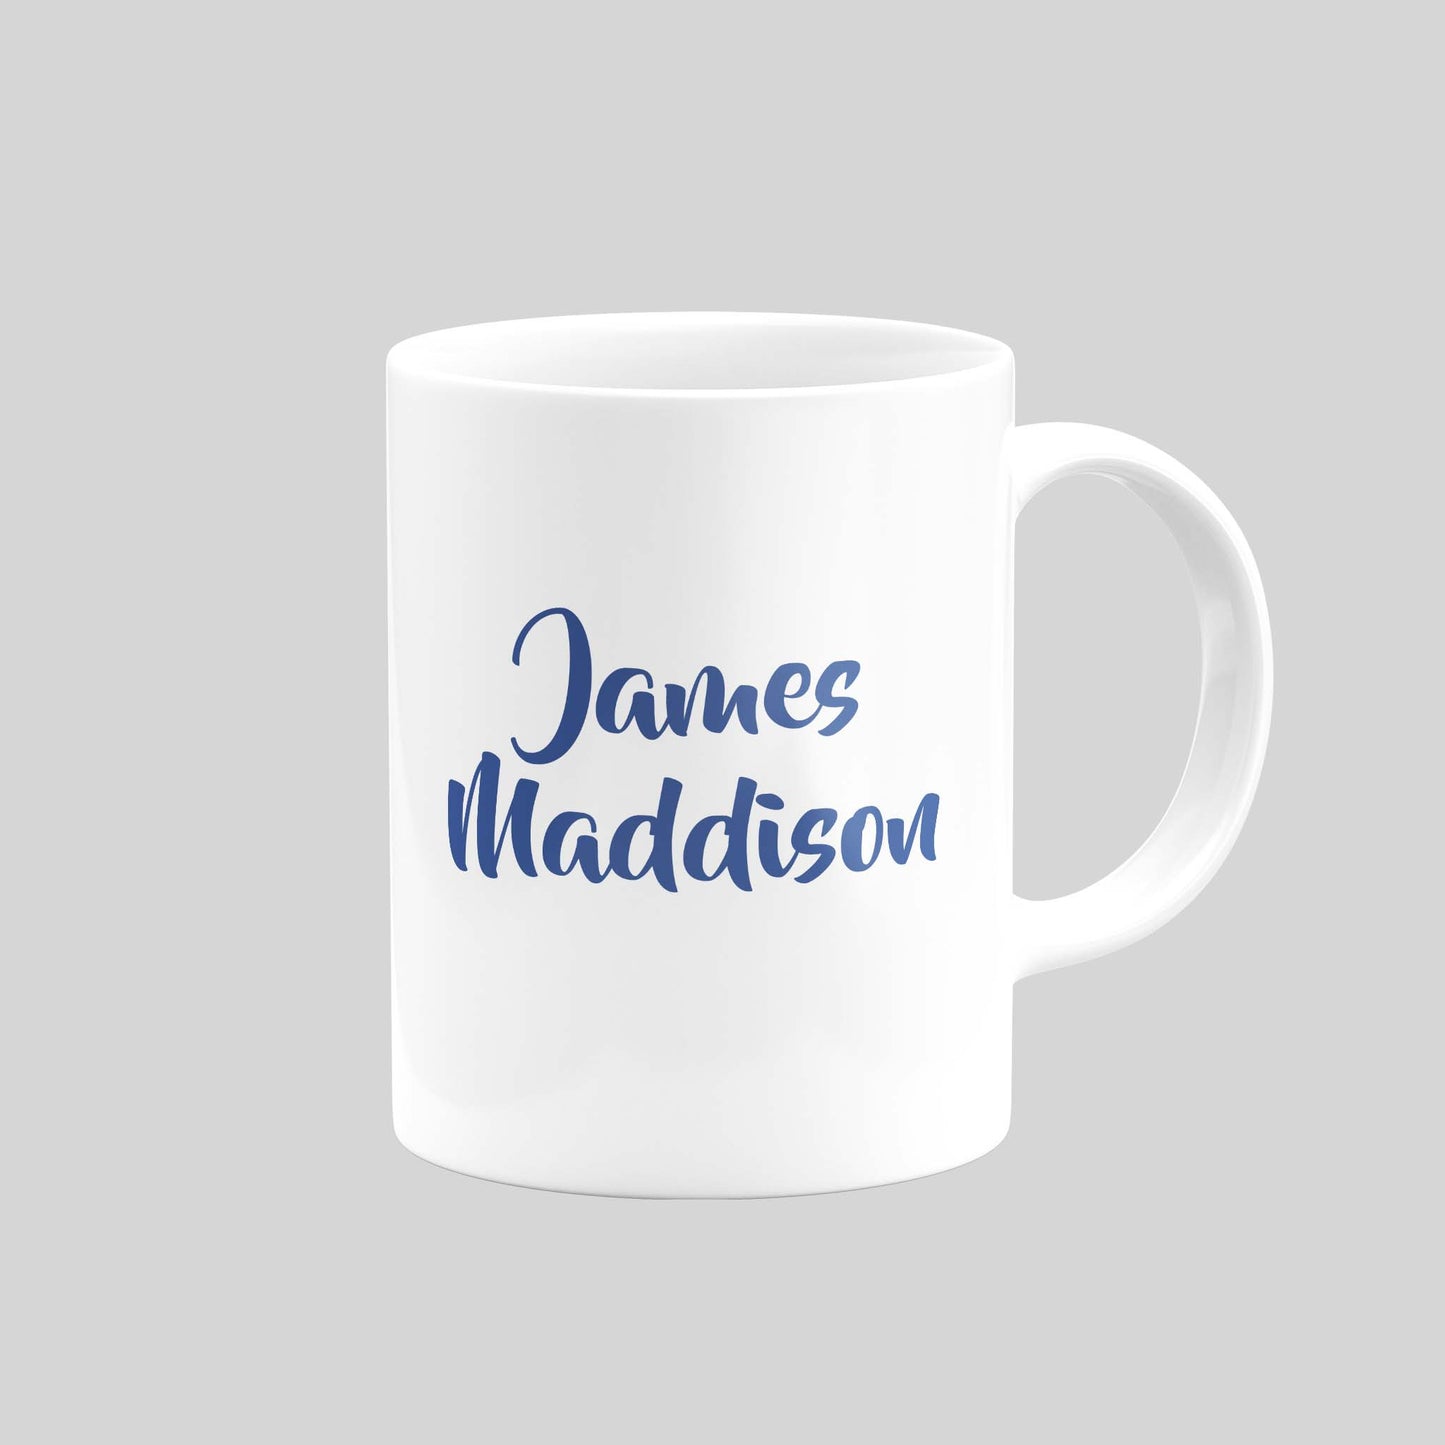 James Maddison Mug